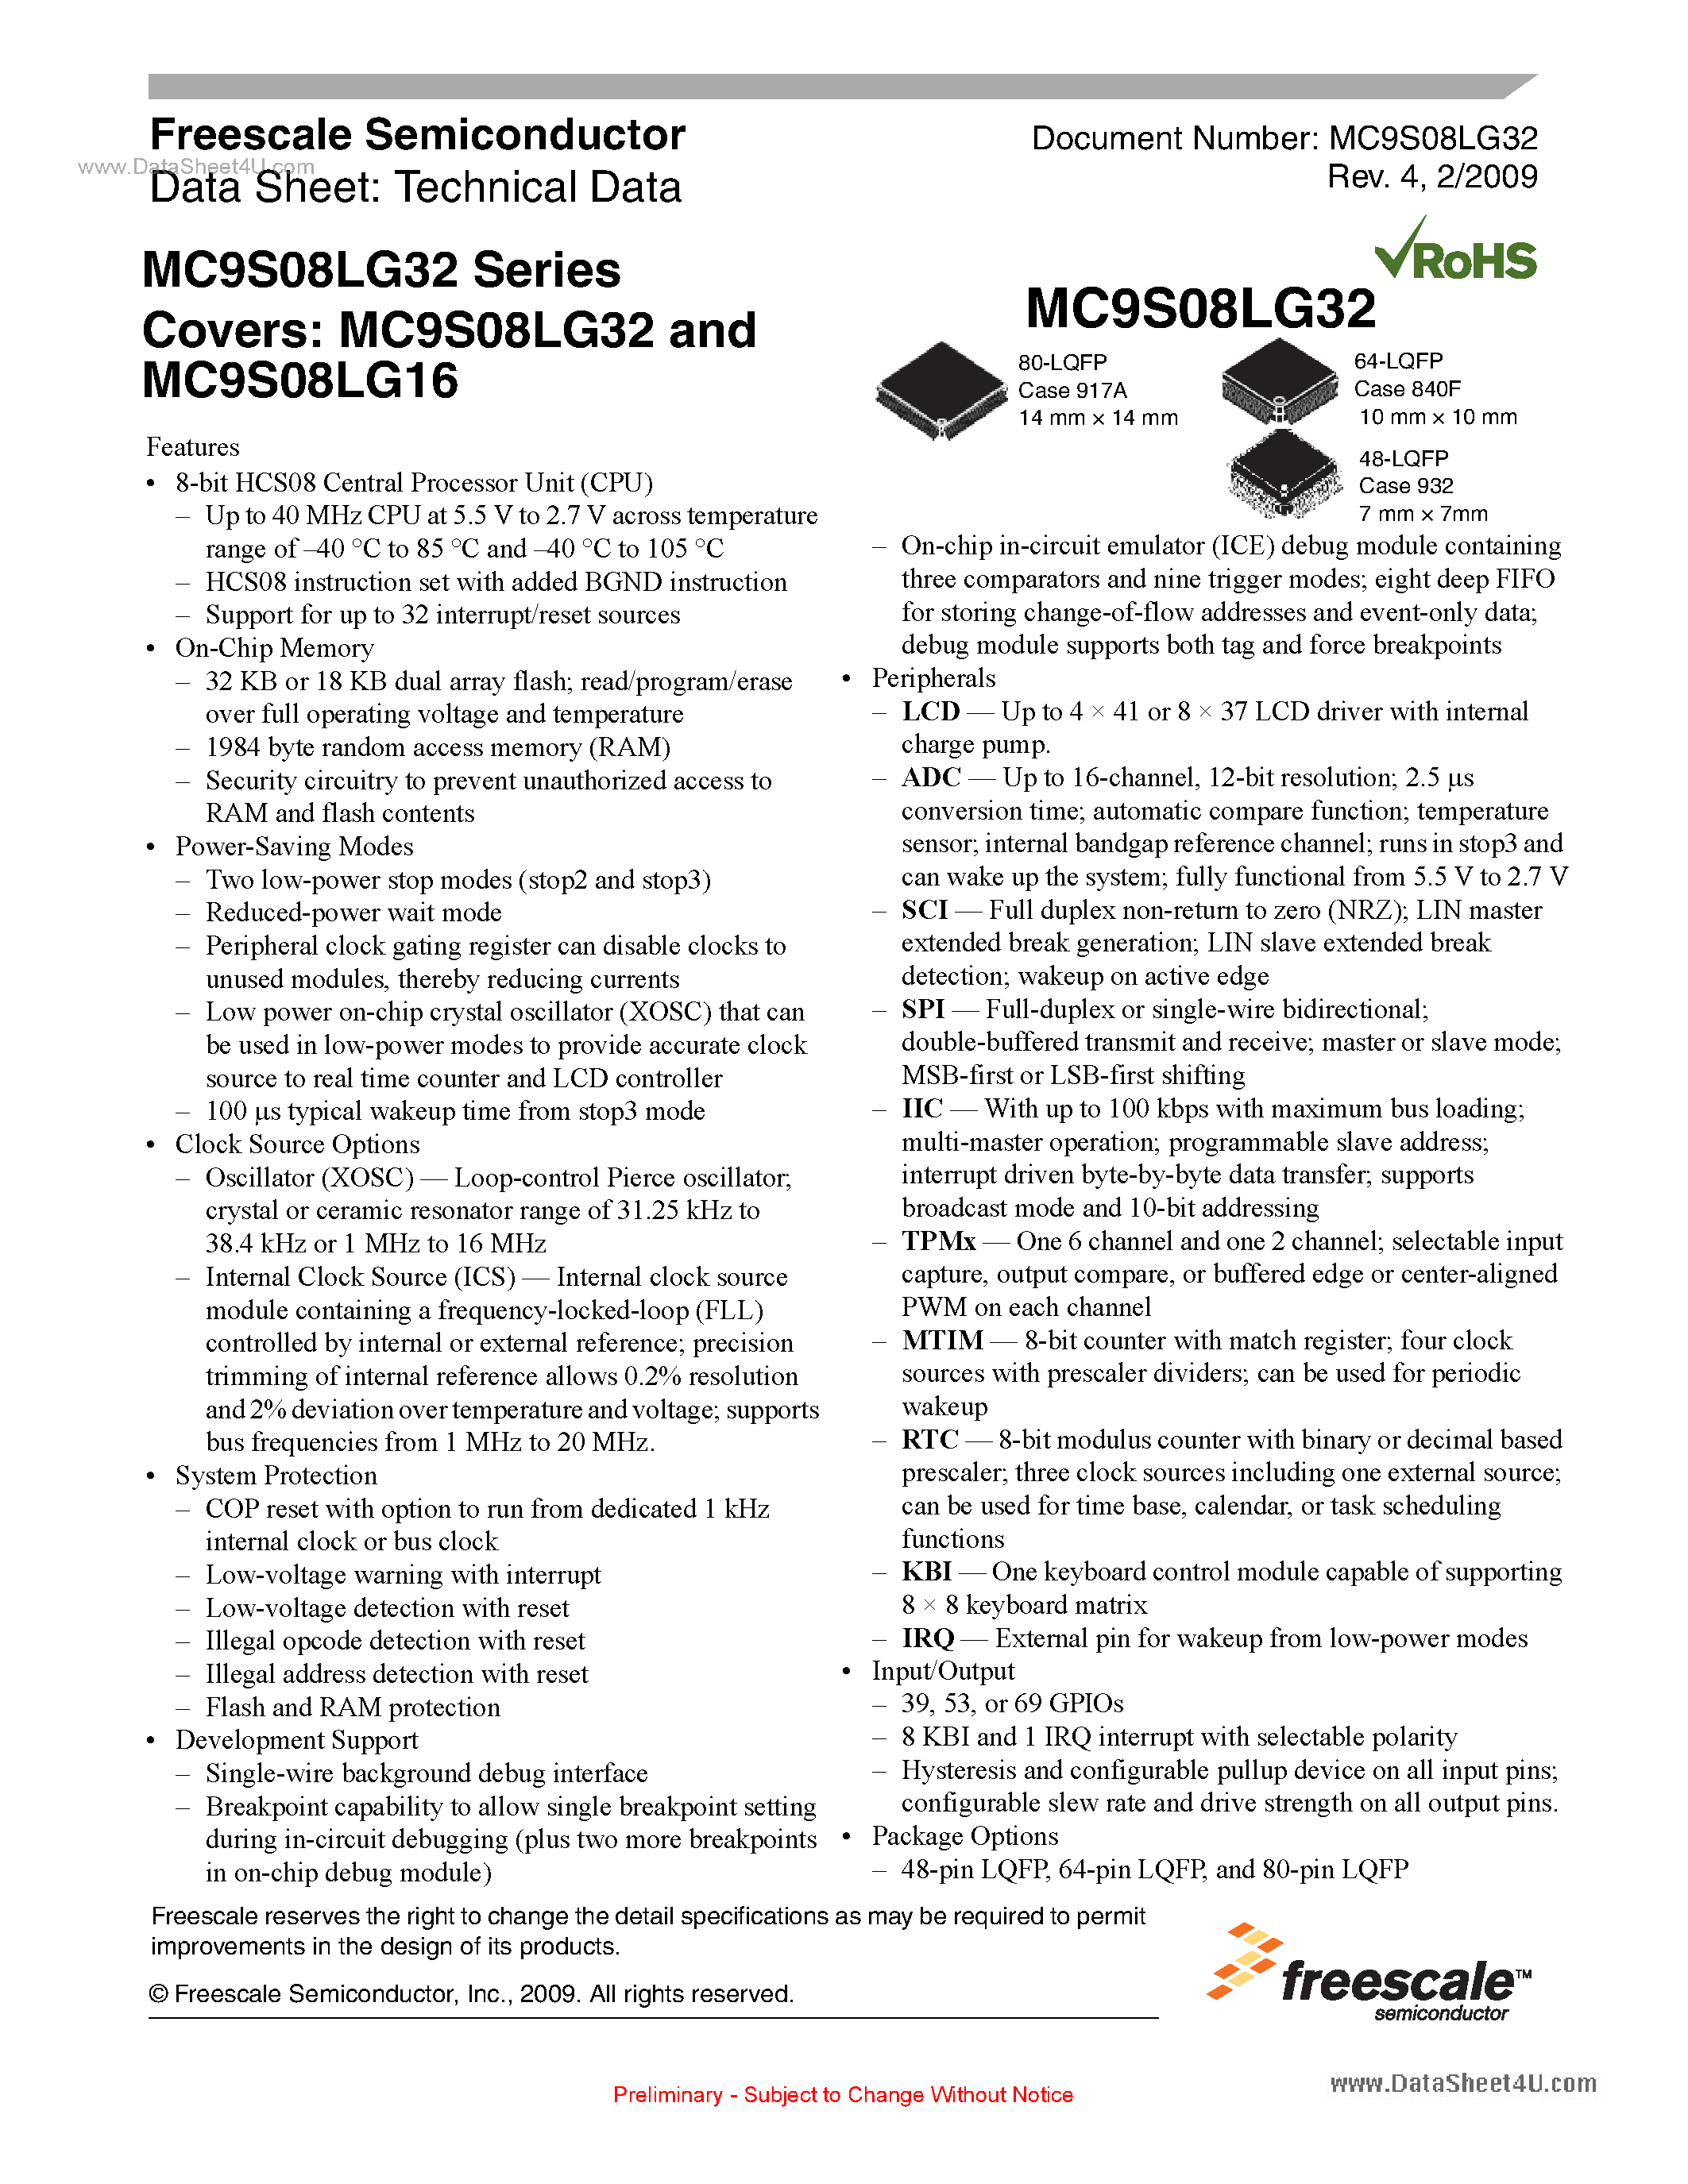 Даташит MC9S08LG16 - (MC9S08LG16 / MC9S08LG32) 8-bit HCS08 Central Processor Unit страница 1